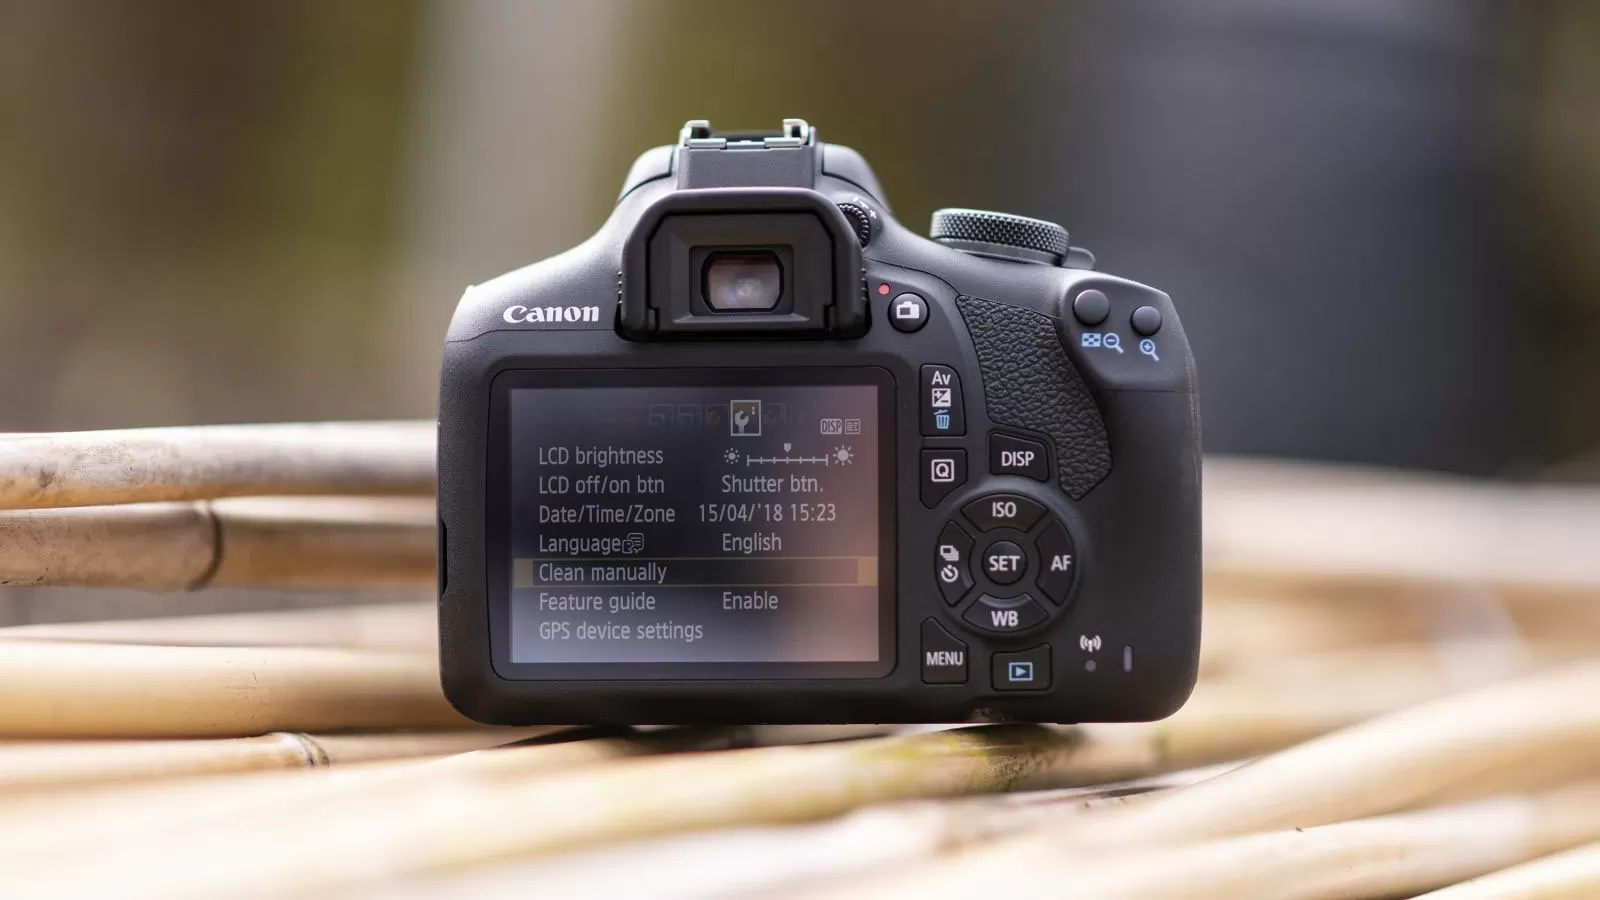 دوربین عکاسی کانن Canon 2000D 18-55 DC III